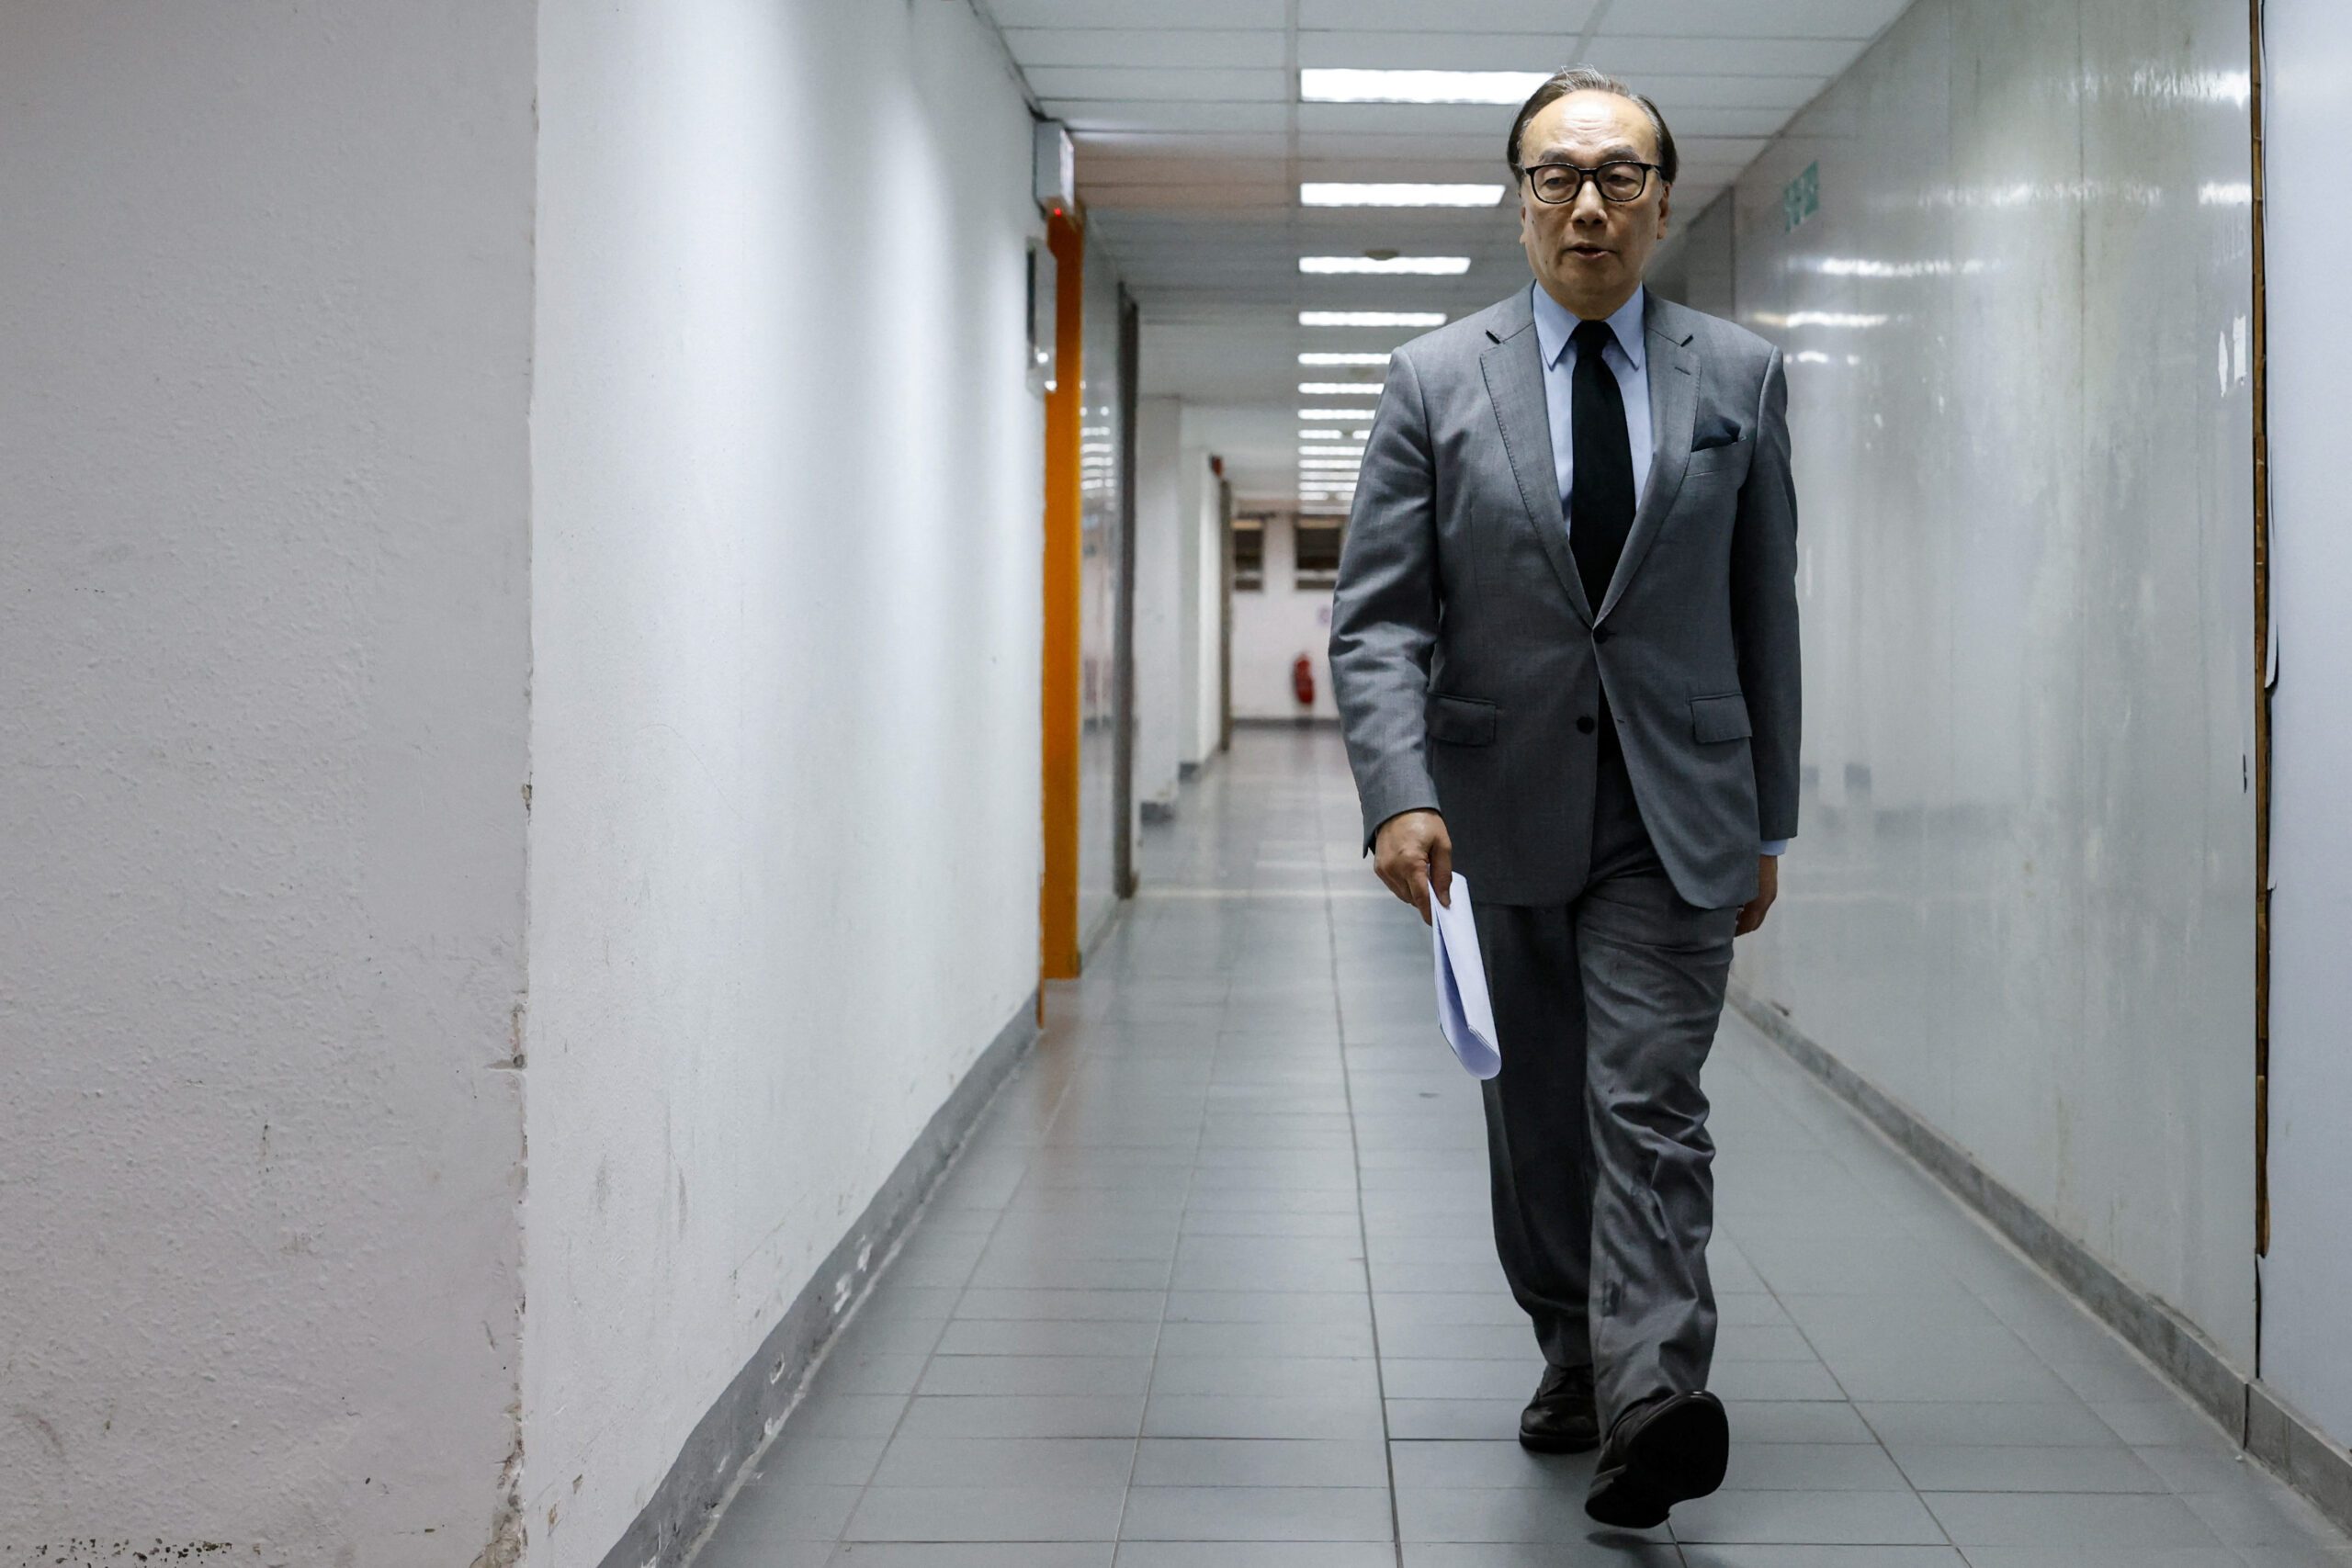 Major Hong Kong democratic party disbands amid China security clampdown